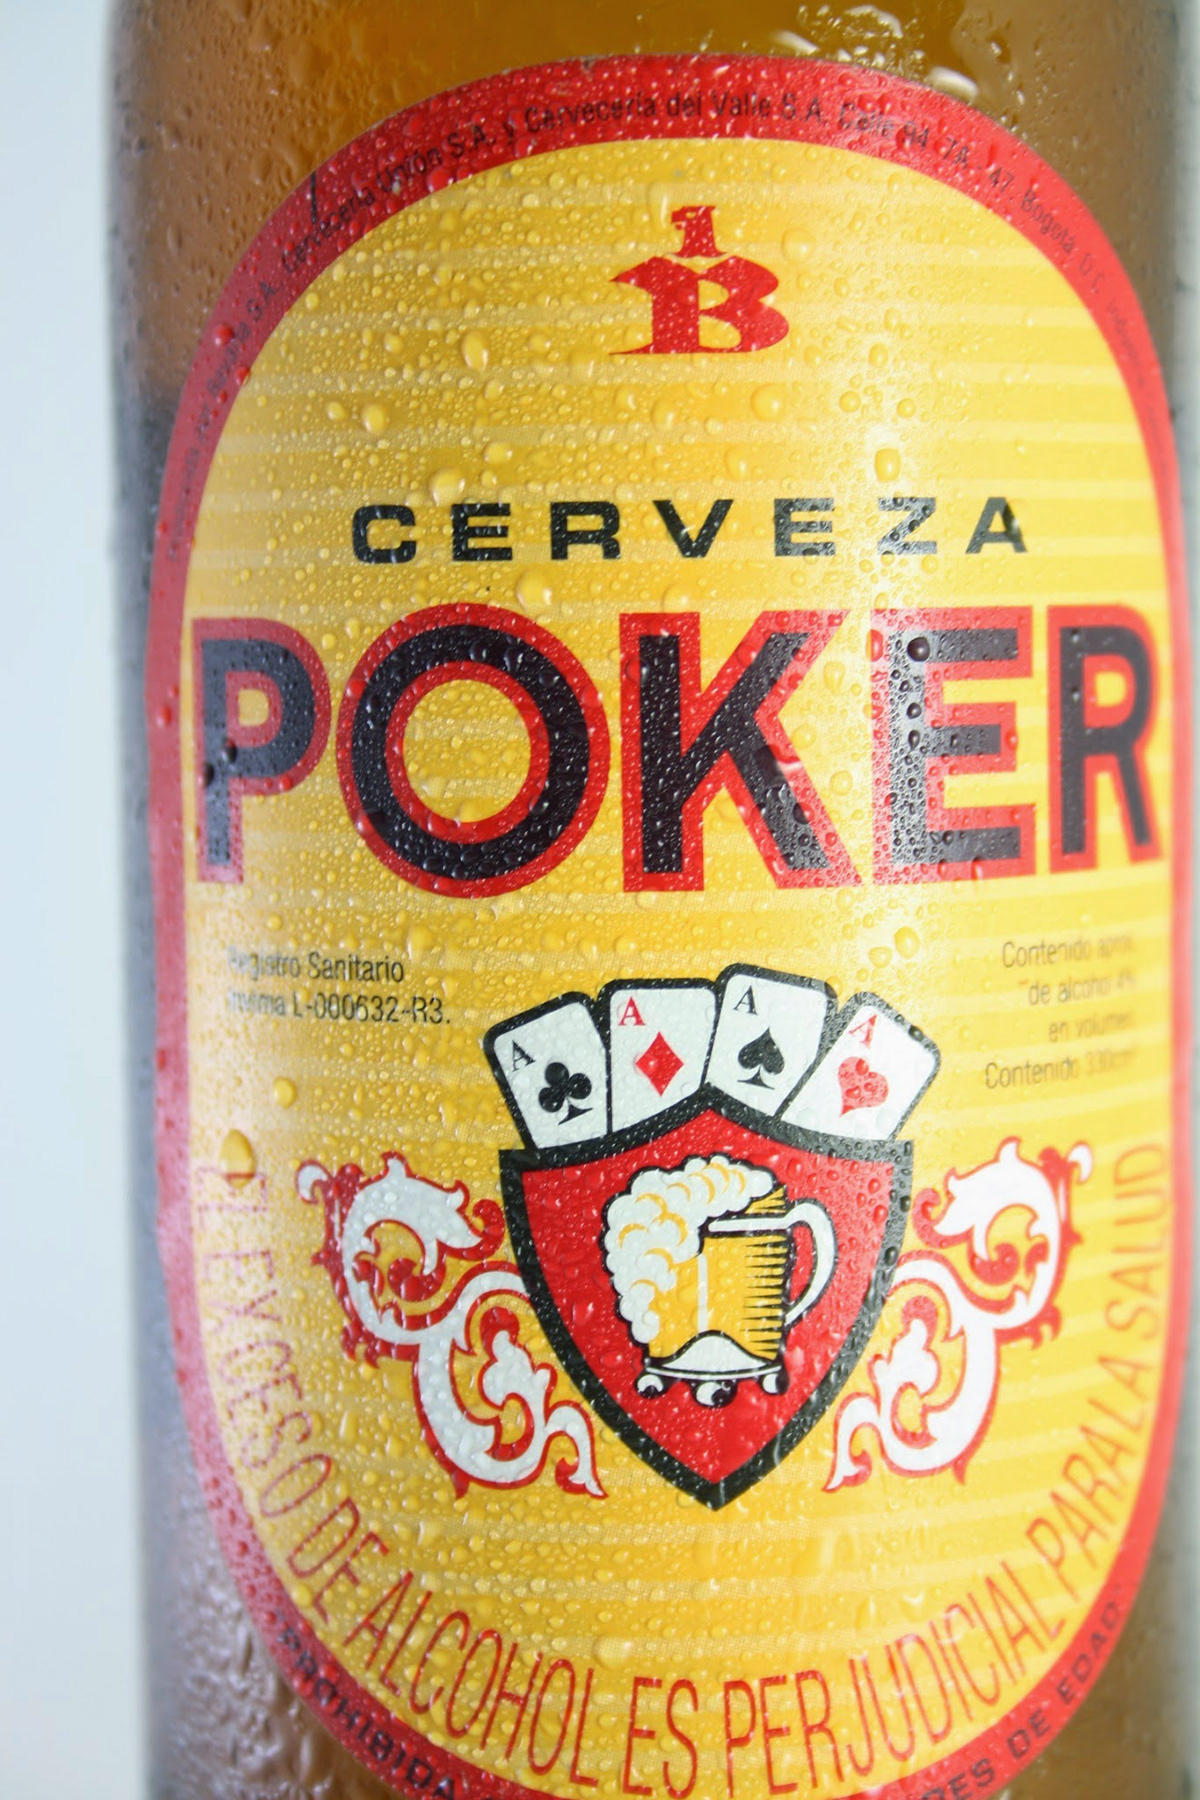 Poker beer